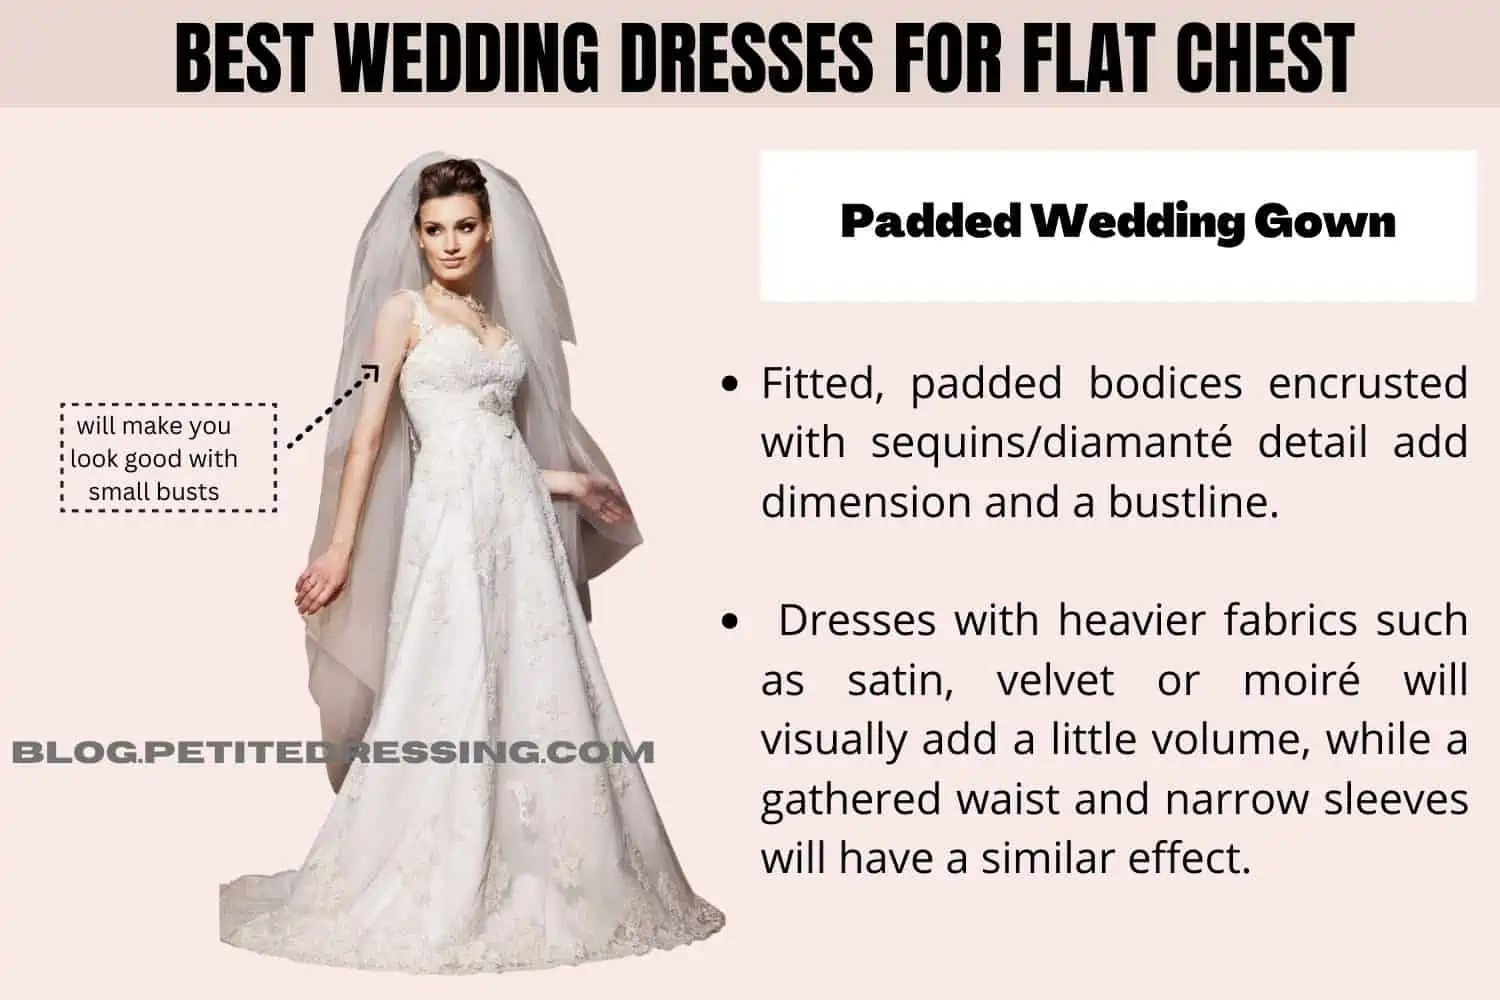 Wedding Dress For Small Bust - UCenter Dress